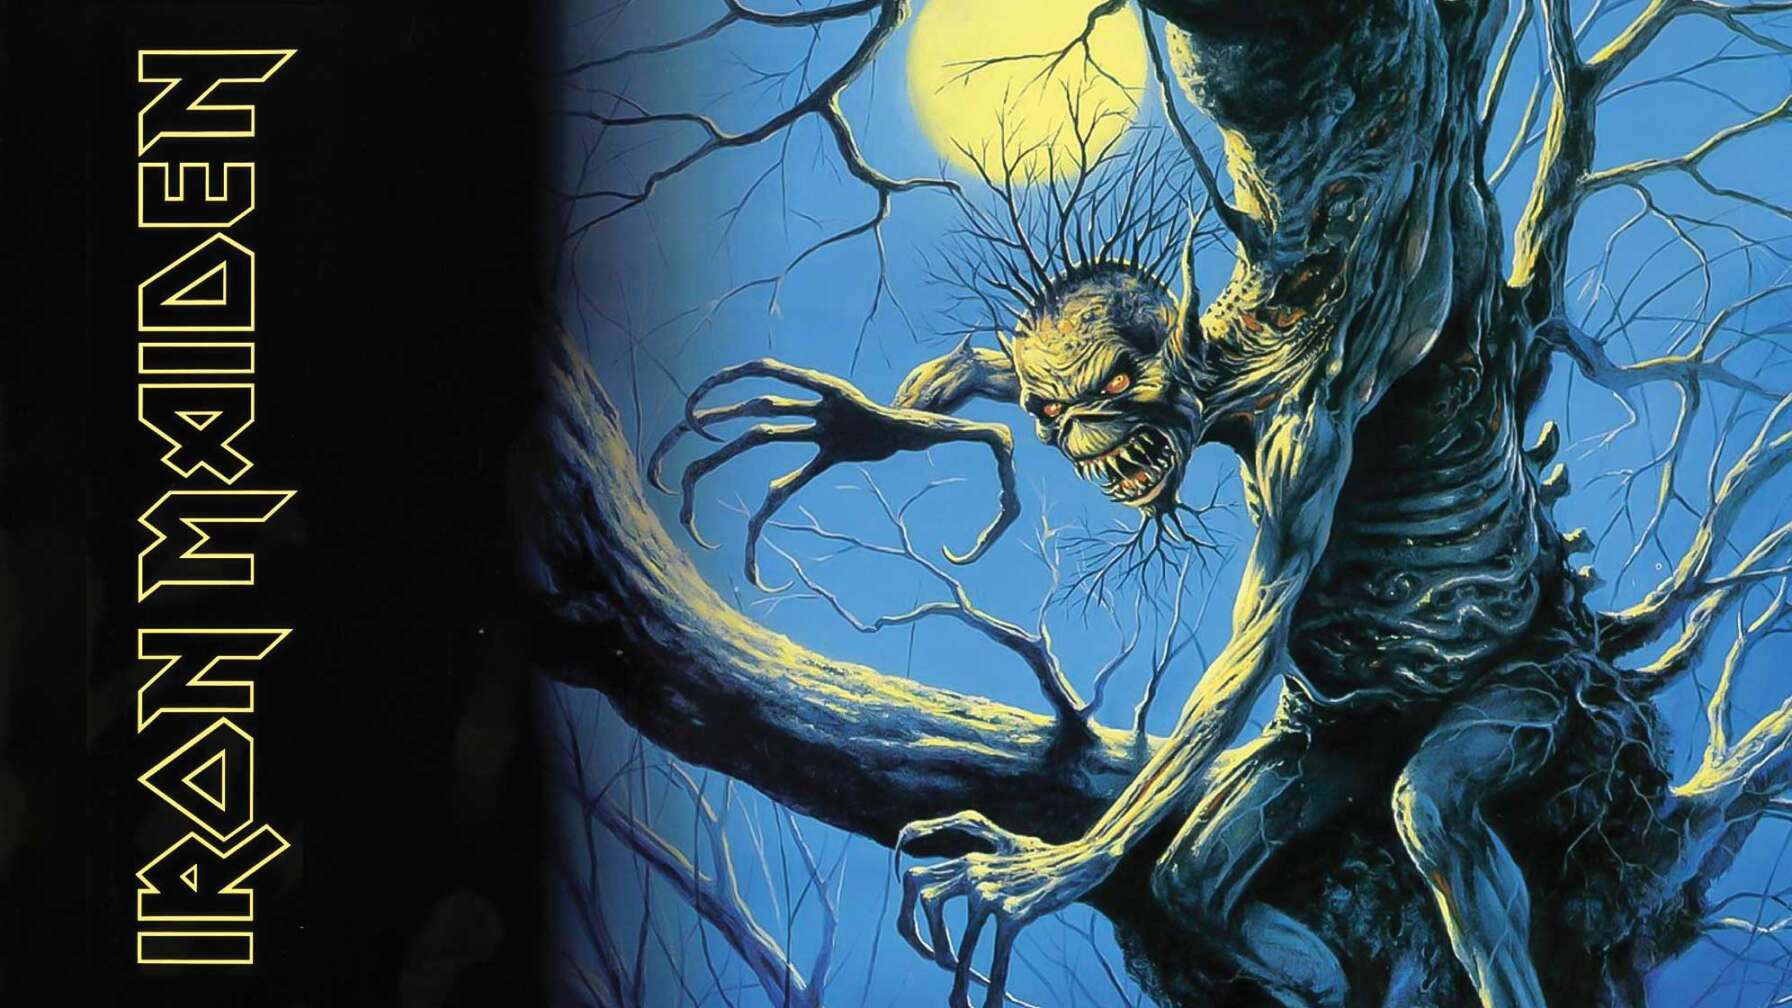 Das Cover von Iron Maidens Album "Fear of the Dark". Ein Monster in Gestalt des Band-Maskottchens Eddie schält sich aus einem Baum. Im Hintergrund leuchtet der Vollmond.